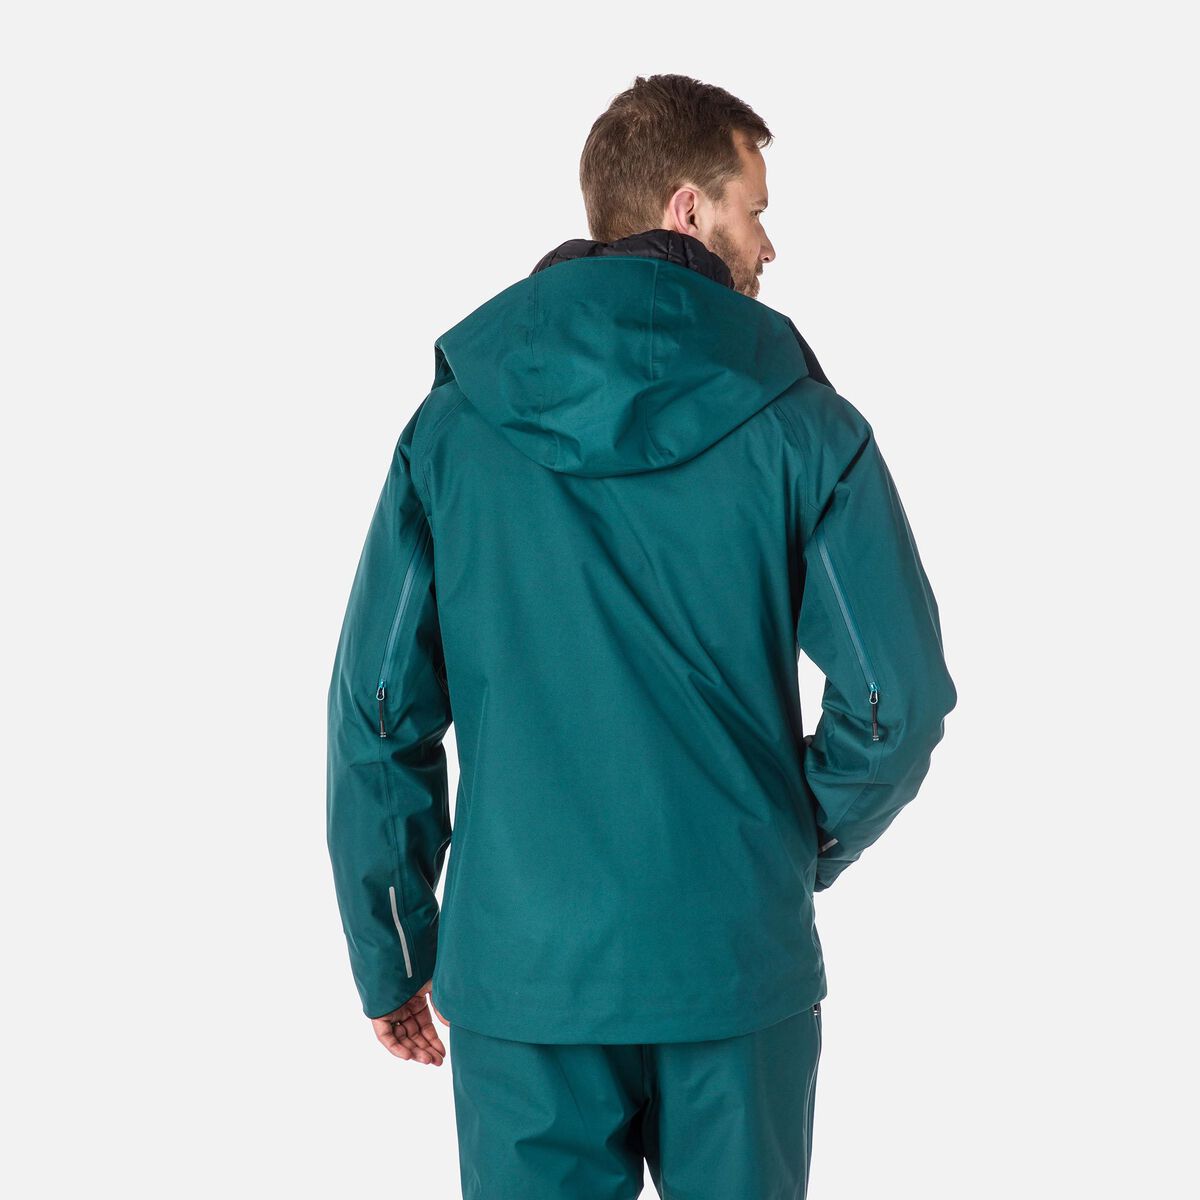 Men's SKPR Three-Layer Jacket